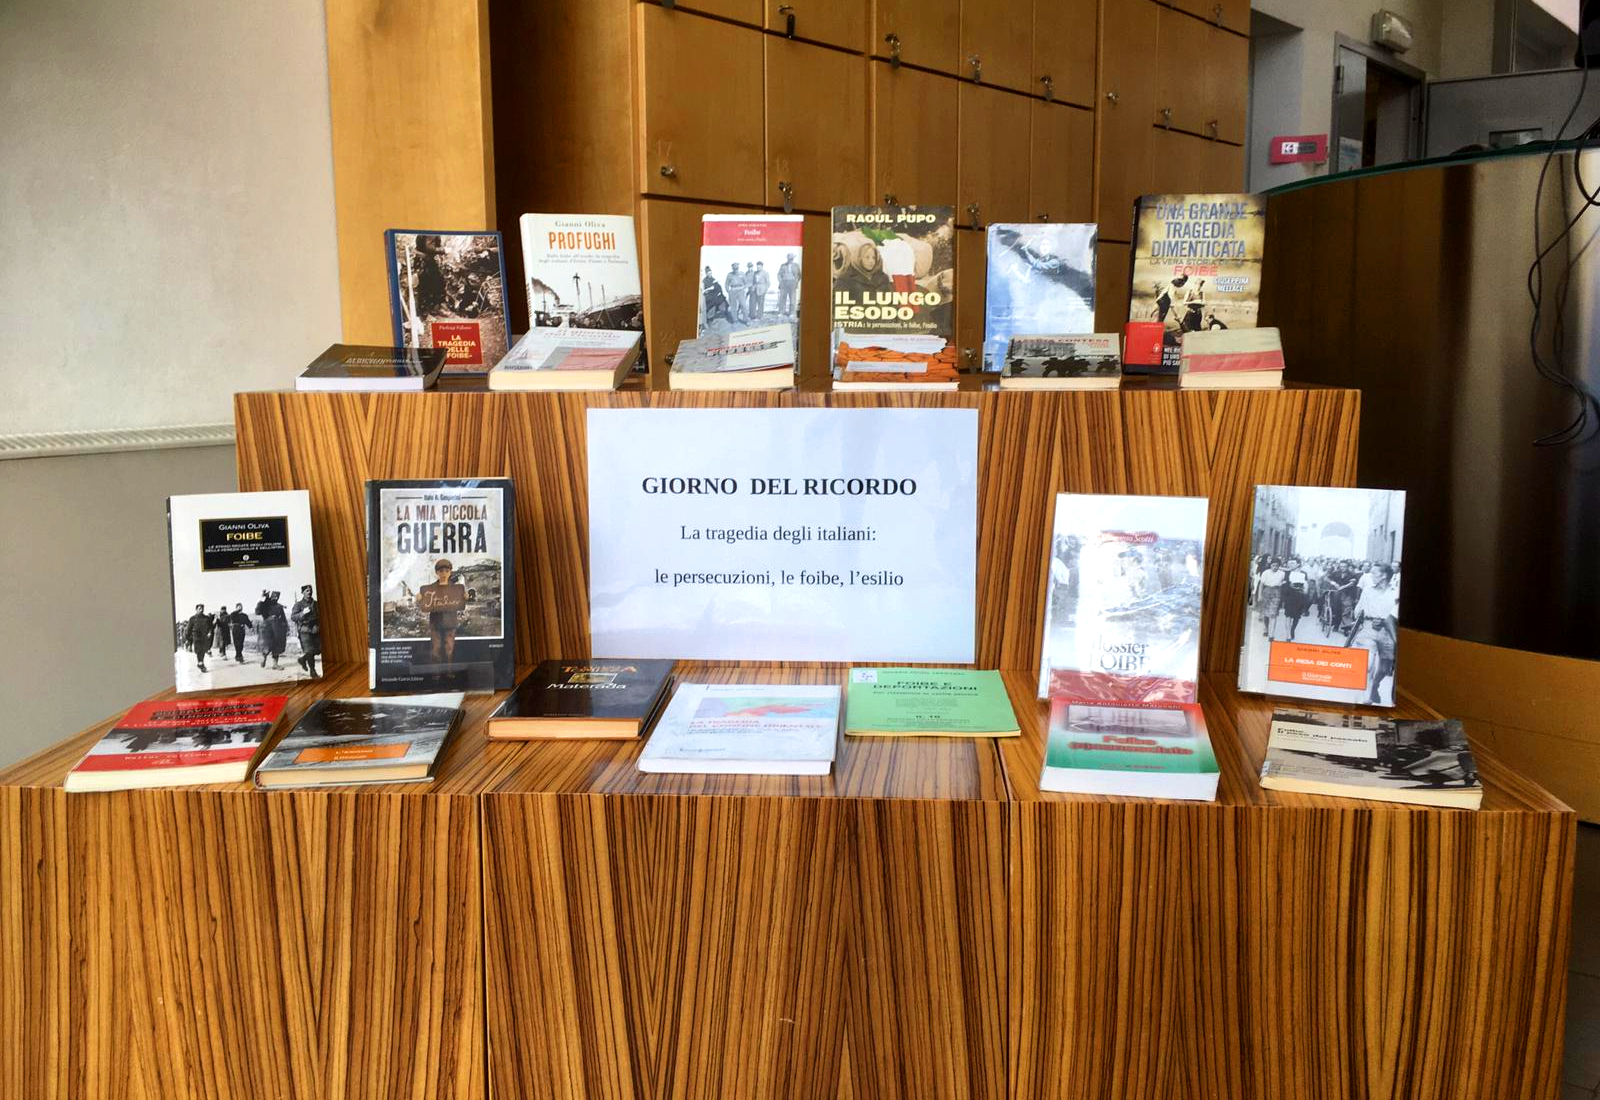 L'esposizione di libri e film in biblioteca (Foto da comunicato)